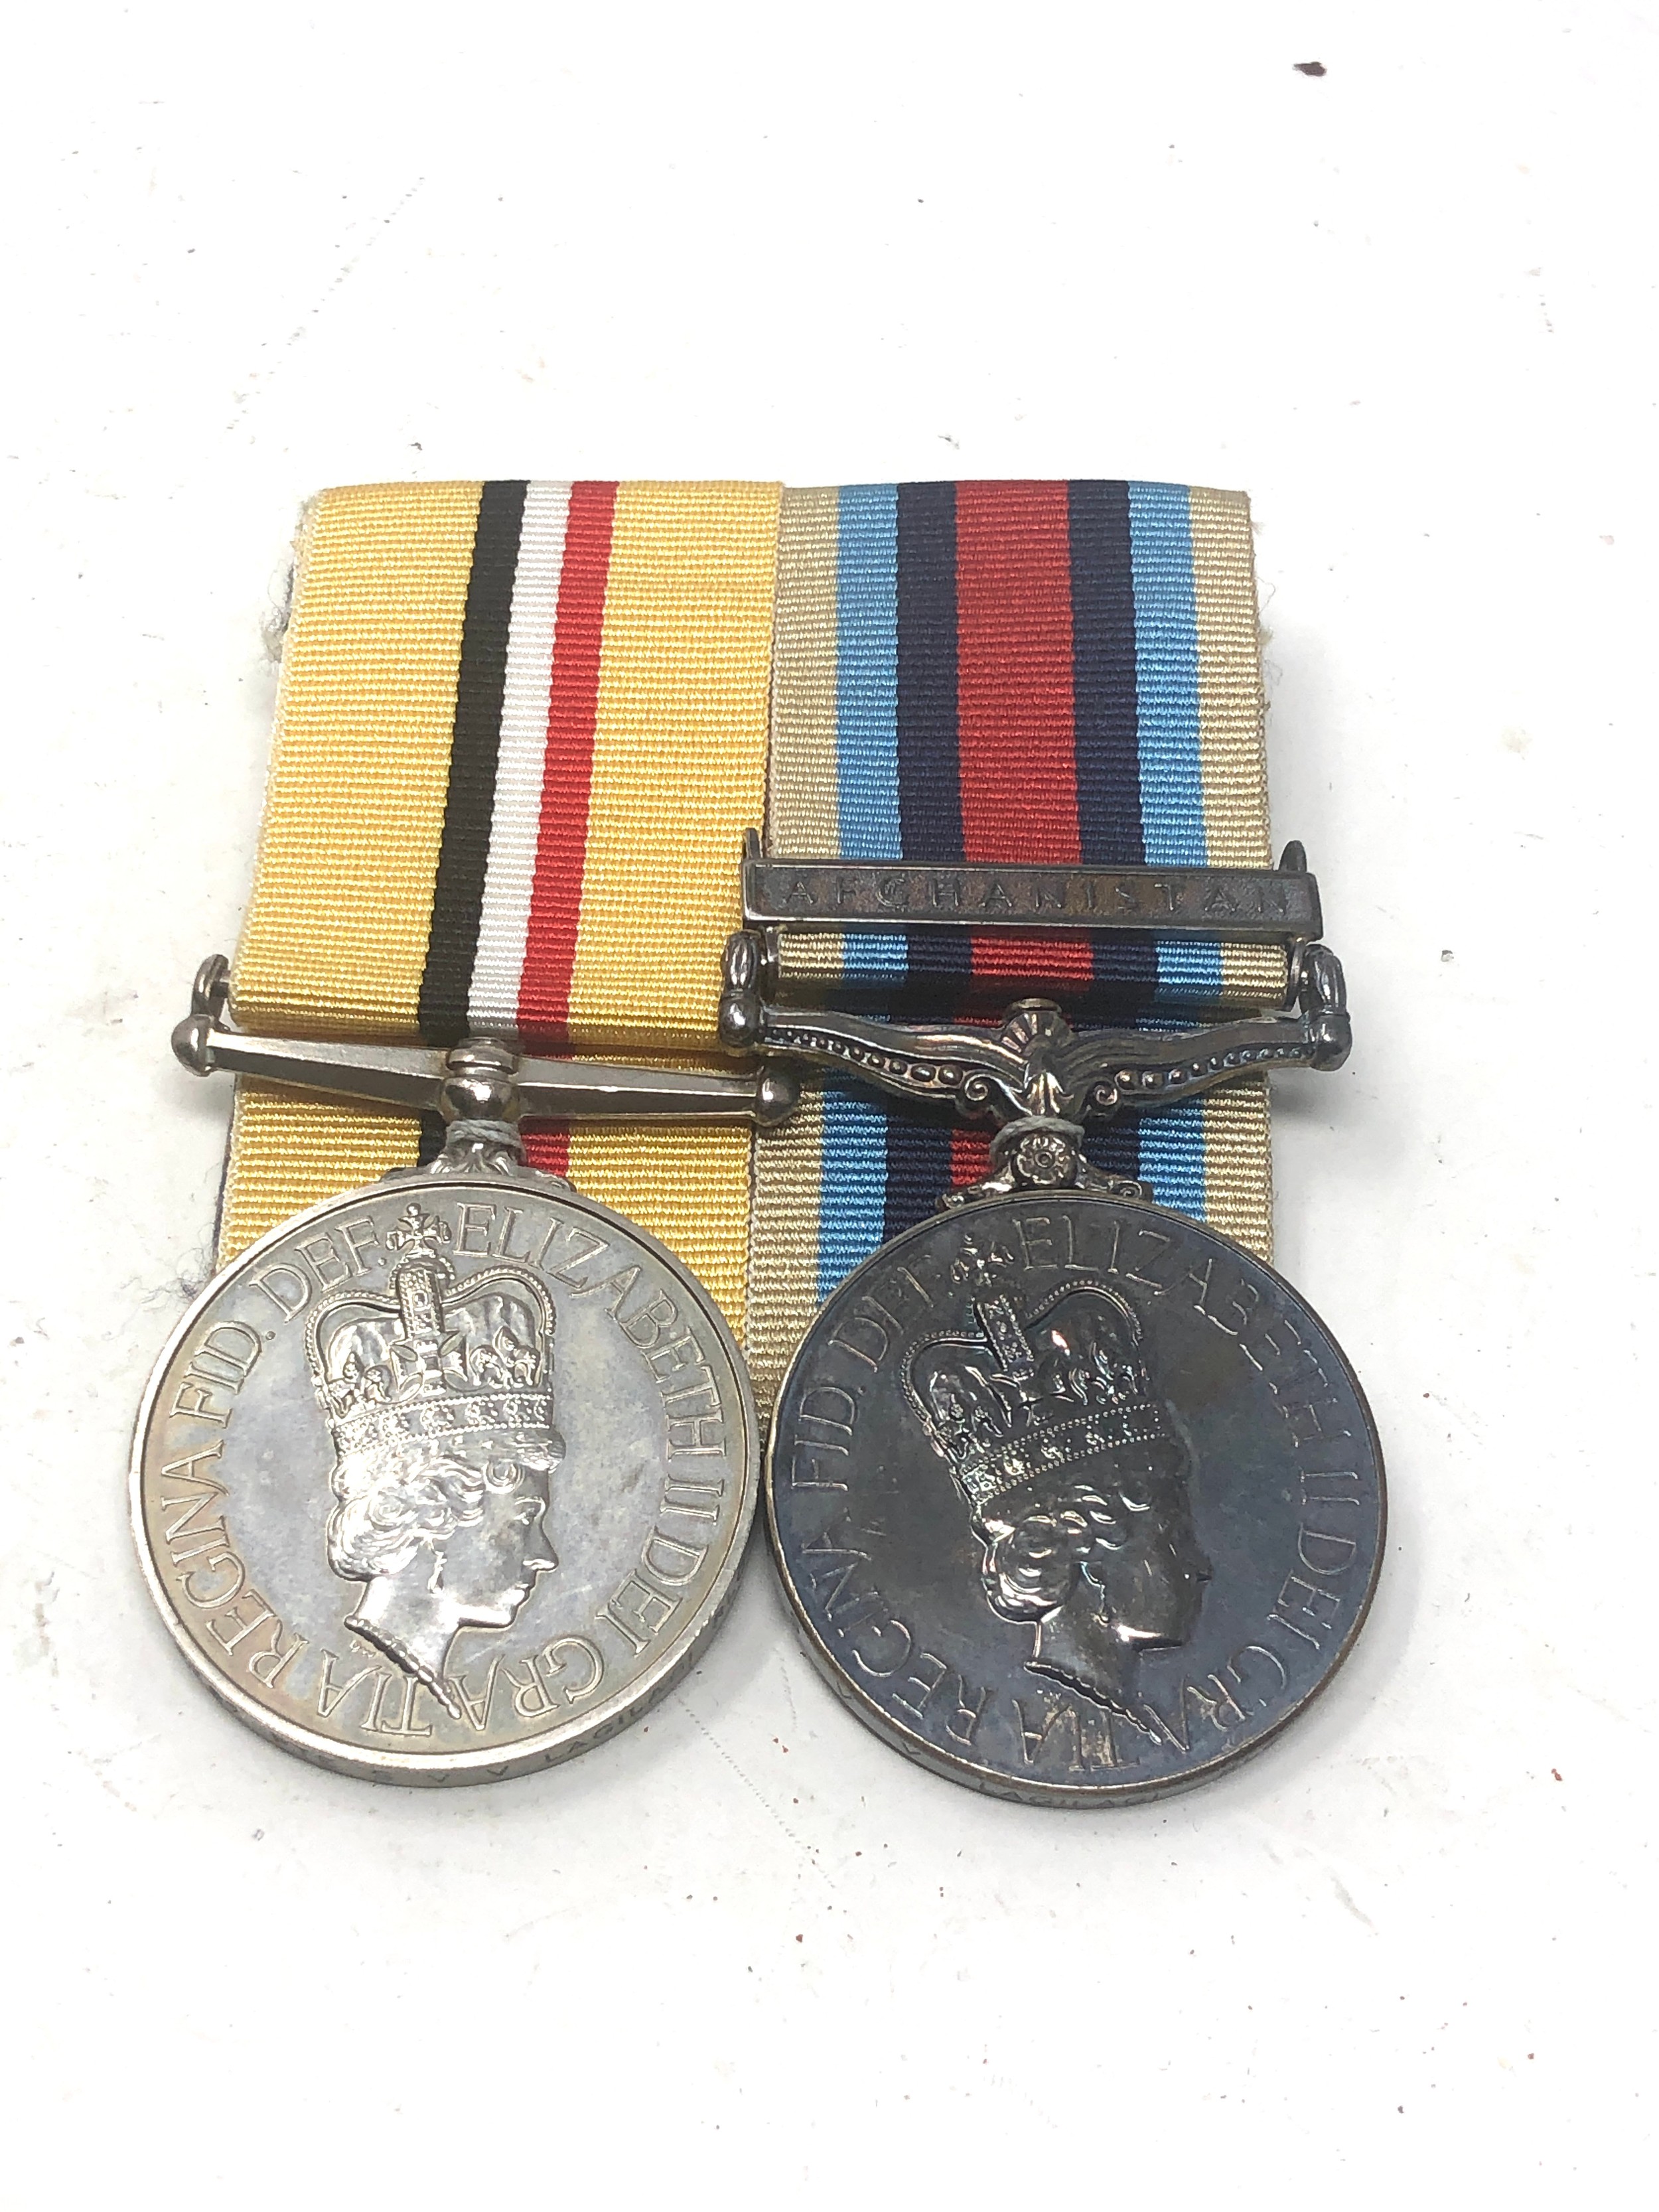 ER.11 mounted Iraq & Afghanistan medals to 25199767 pte s.v.v lagilagi r.l.c